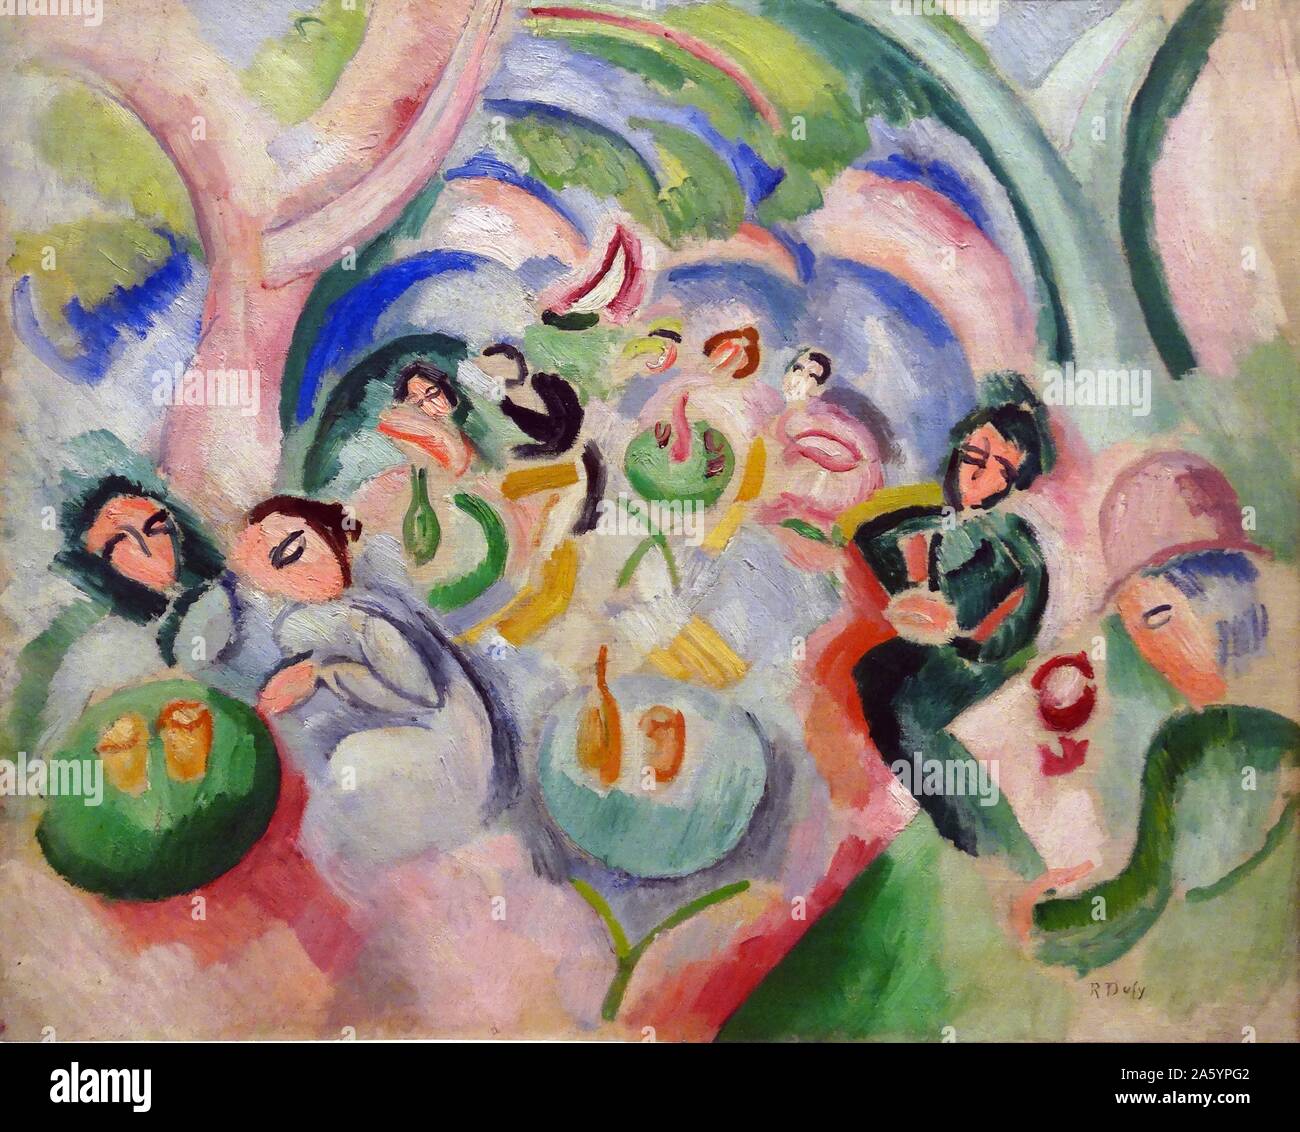 La peinture intitulée "L'Apéritif" par Raoul Dufy (1877-1953) peintre fauviste français. Datée 1908 Banque D'Images